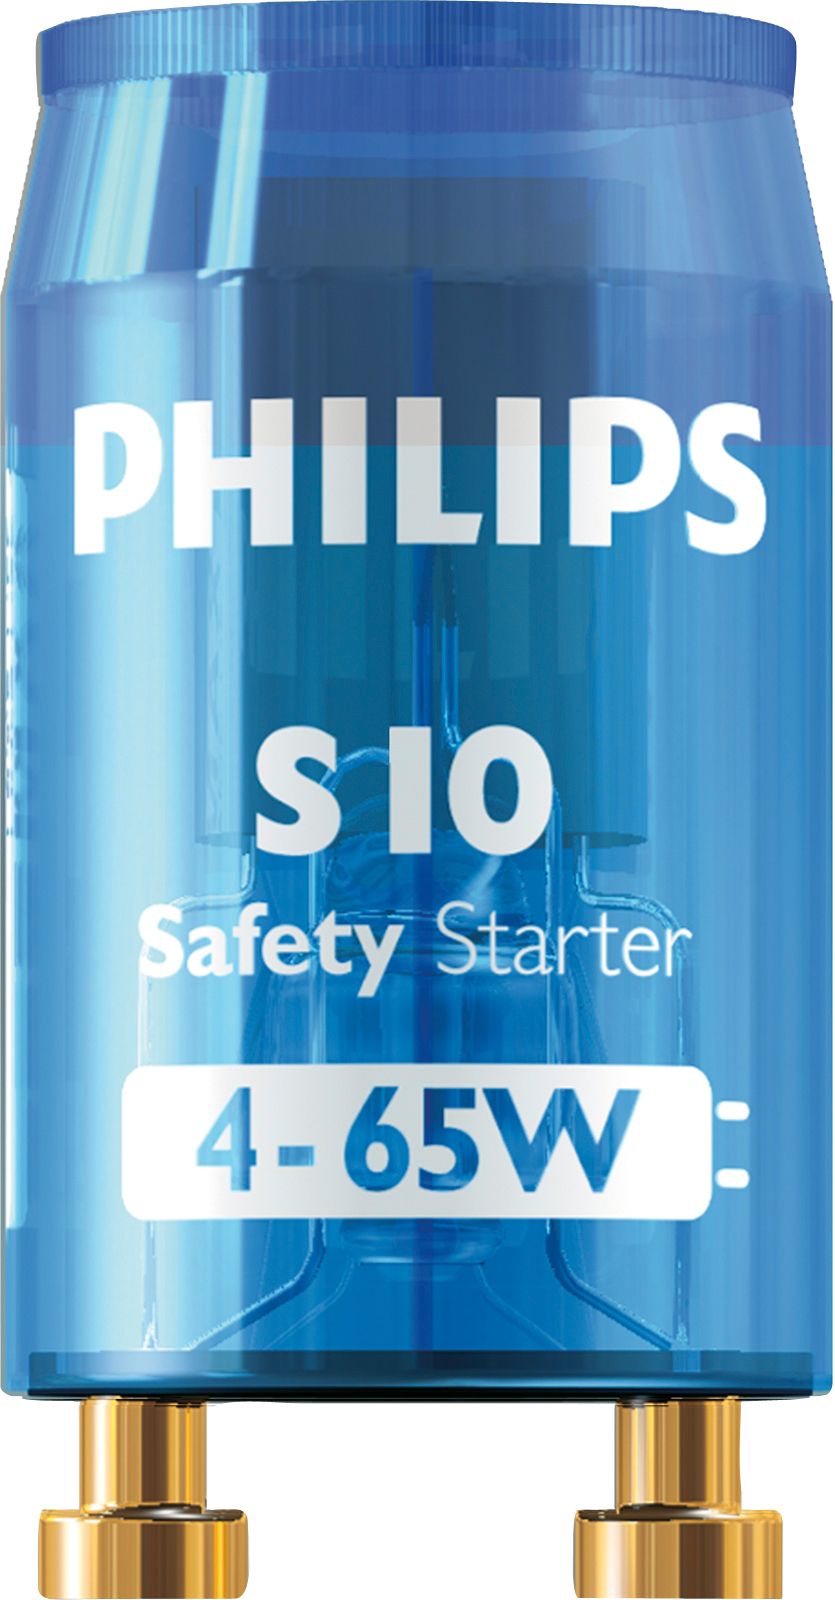 2x PHILIPS S10 Starter Leuchtstoffröhre 4-65 W Leuchtstofflampe Neonröhre  Zünder 8711500697691